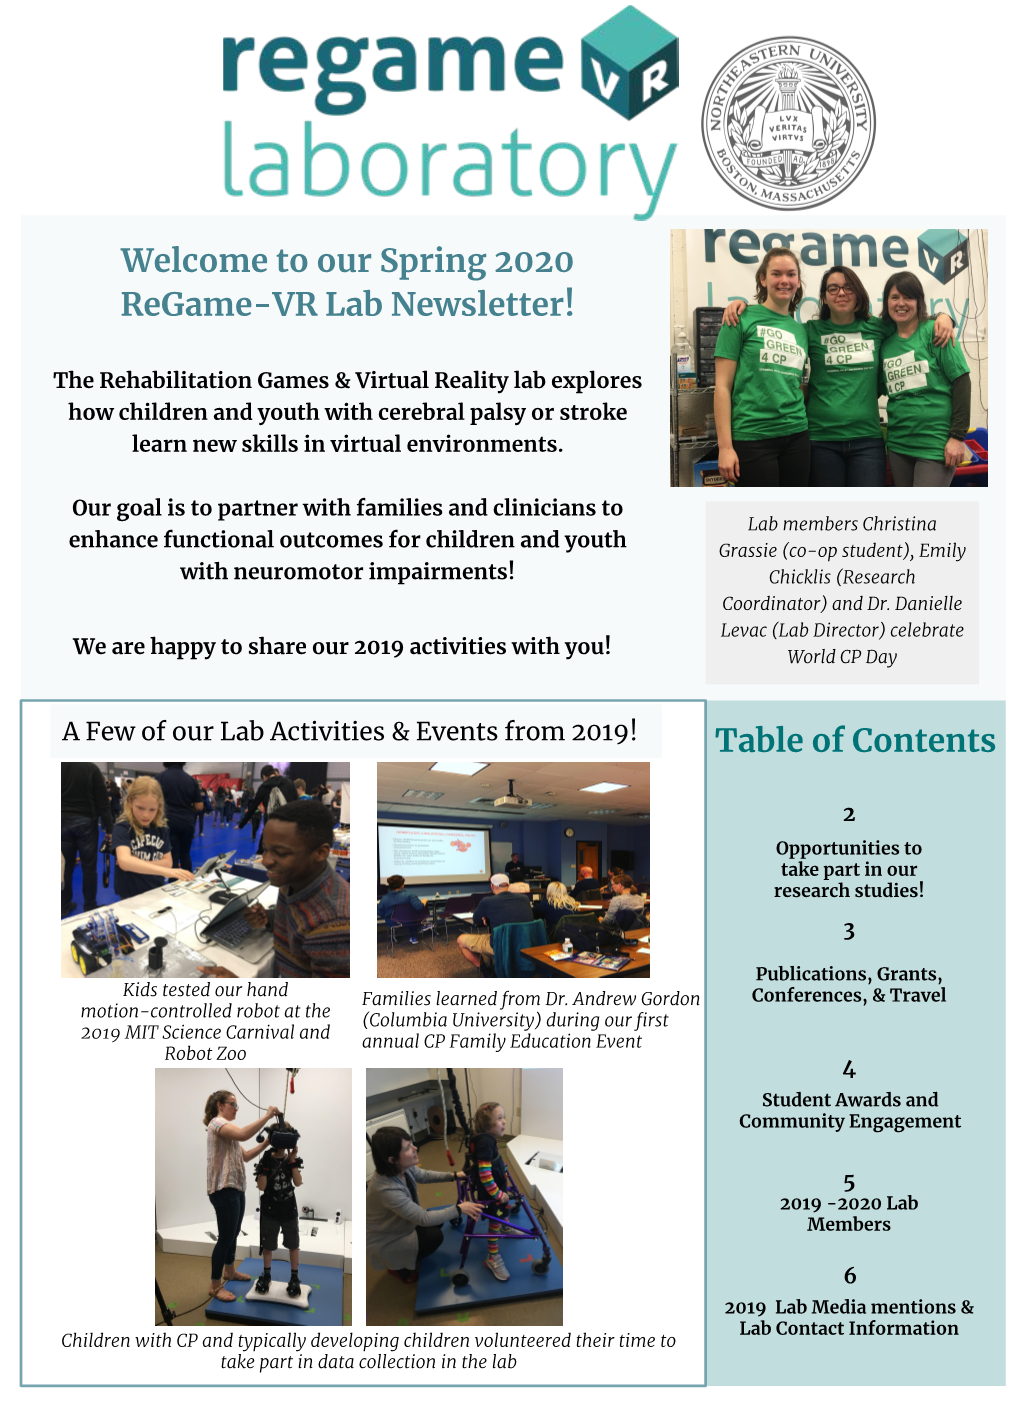 Our Spring 2020 Regame-VR Lab Newsletter!